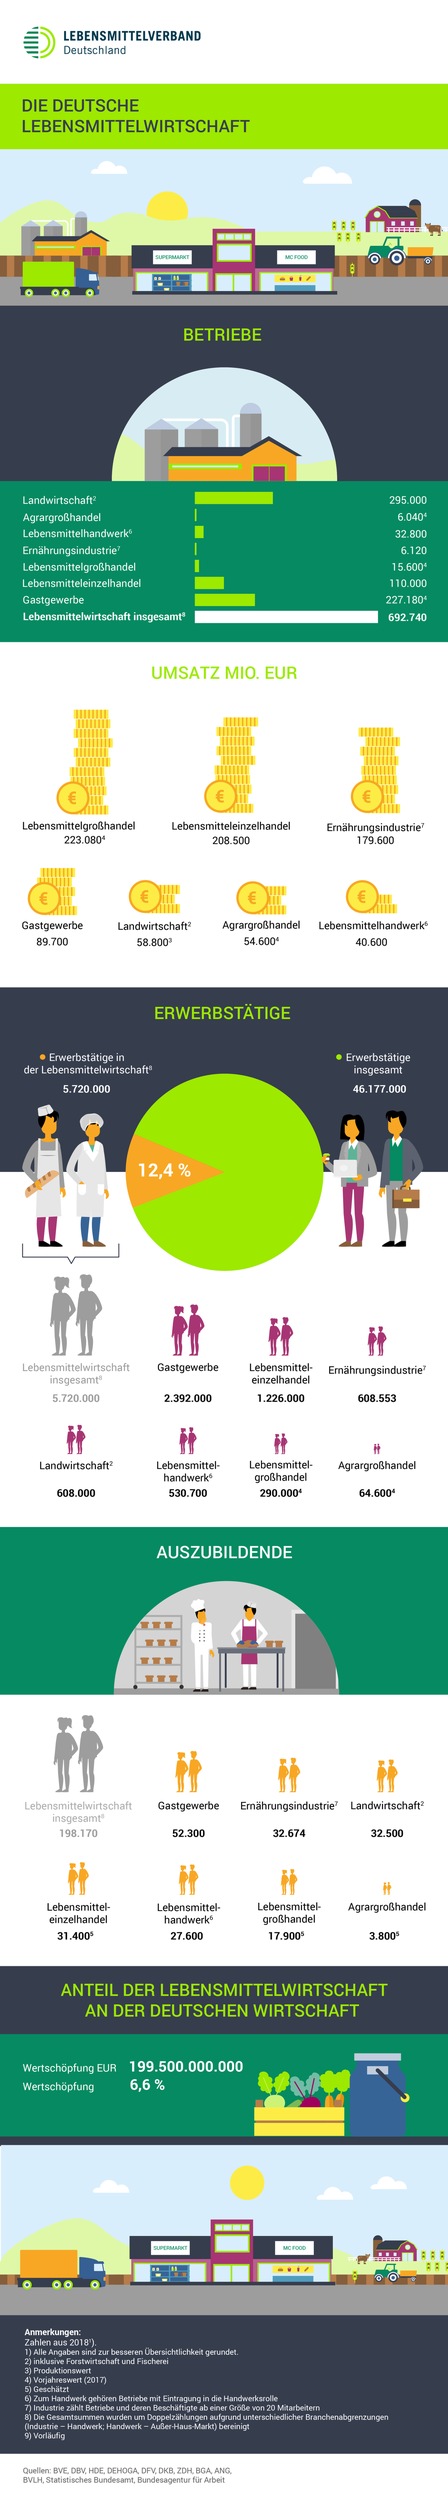 Zwölf Prozent aller Erwerbstätigen in Deutschland arbeiten für die Lebensmittelbranche